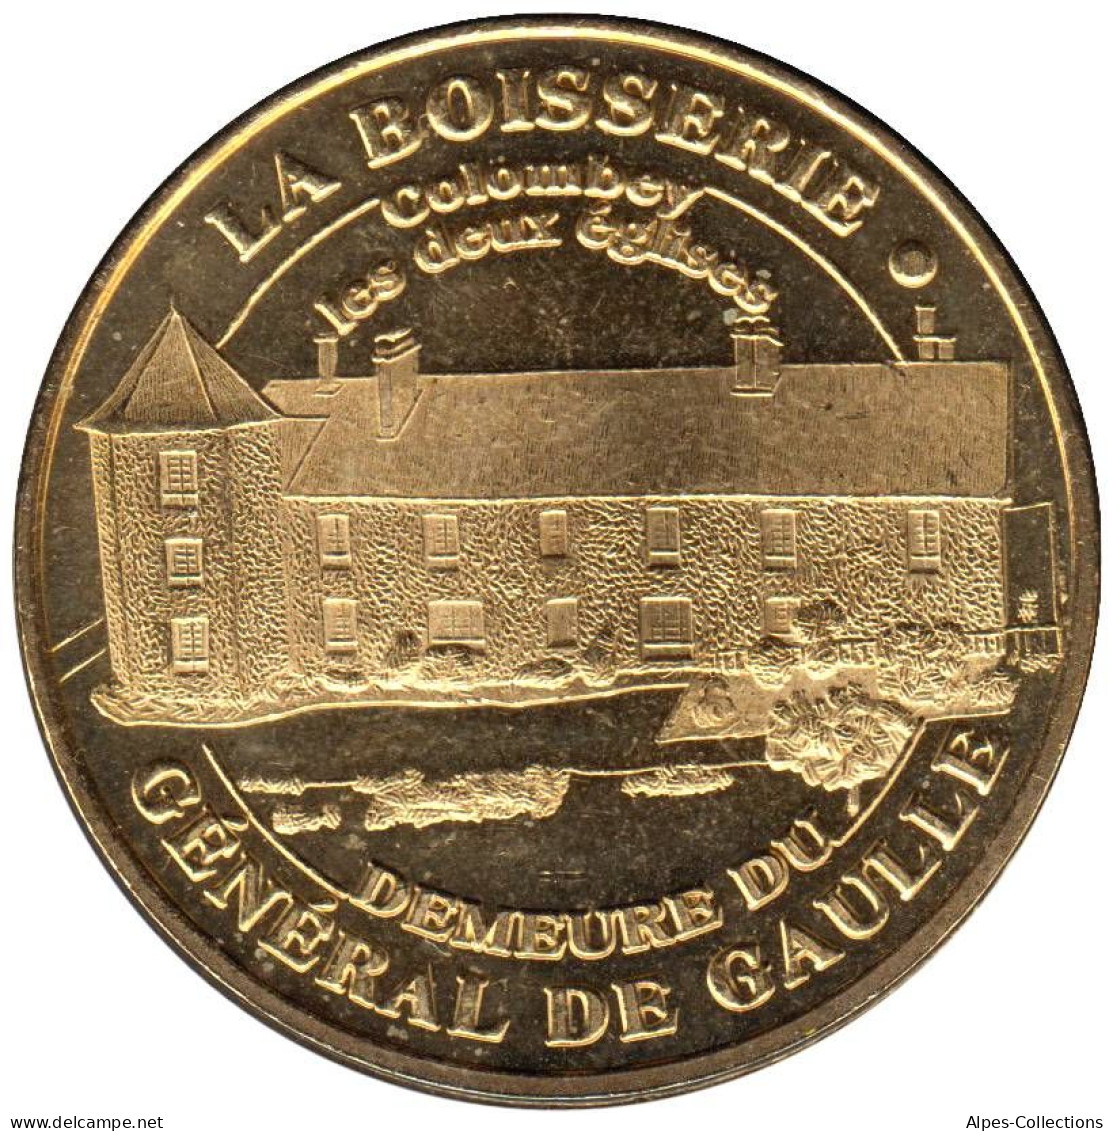 52-0385 - JETON TOURISTIQUE MDP - Boisserie Demeure Général De Gaulle - 2005.1 - 2005